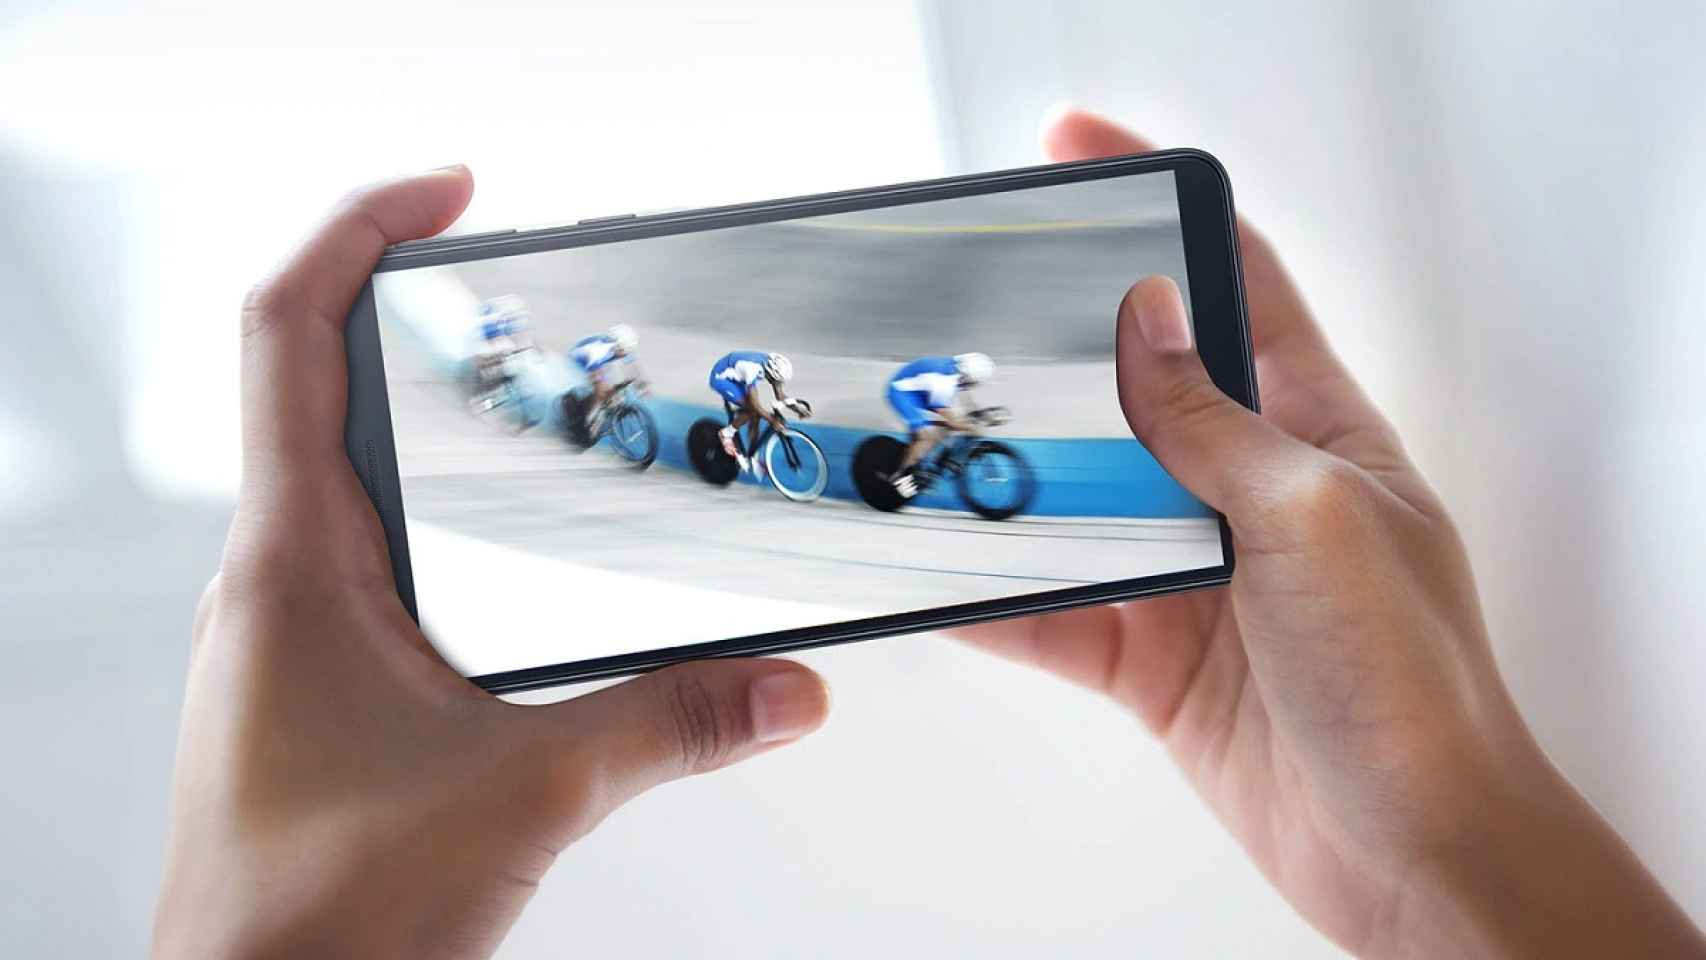 Nuevo Galaxy A3 Core: un móvil con Android Go